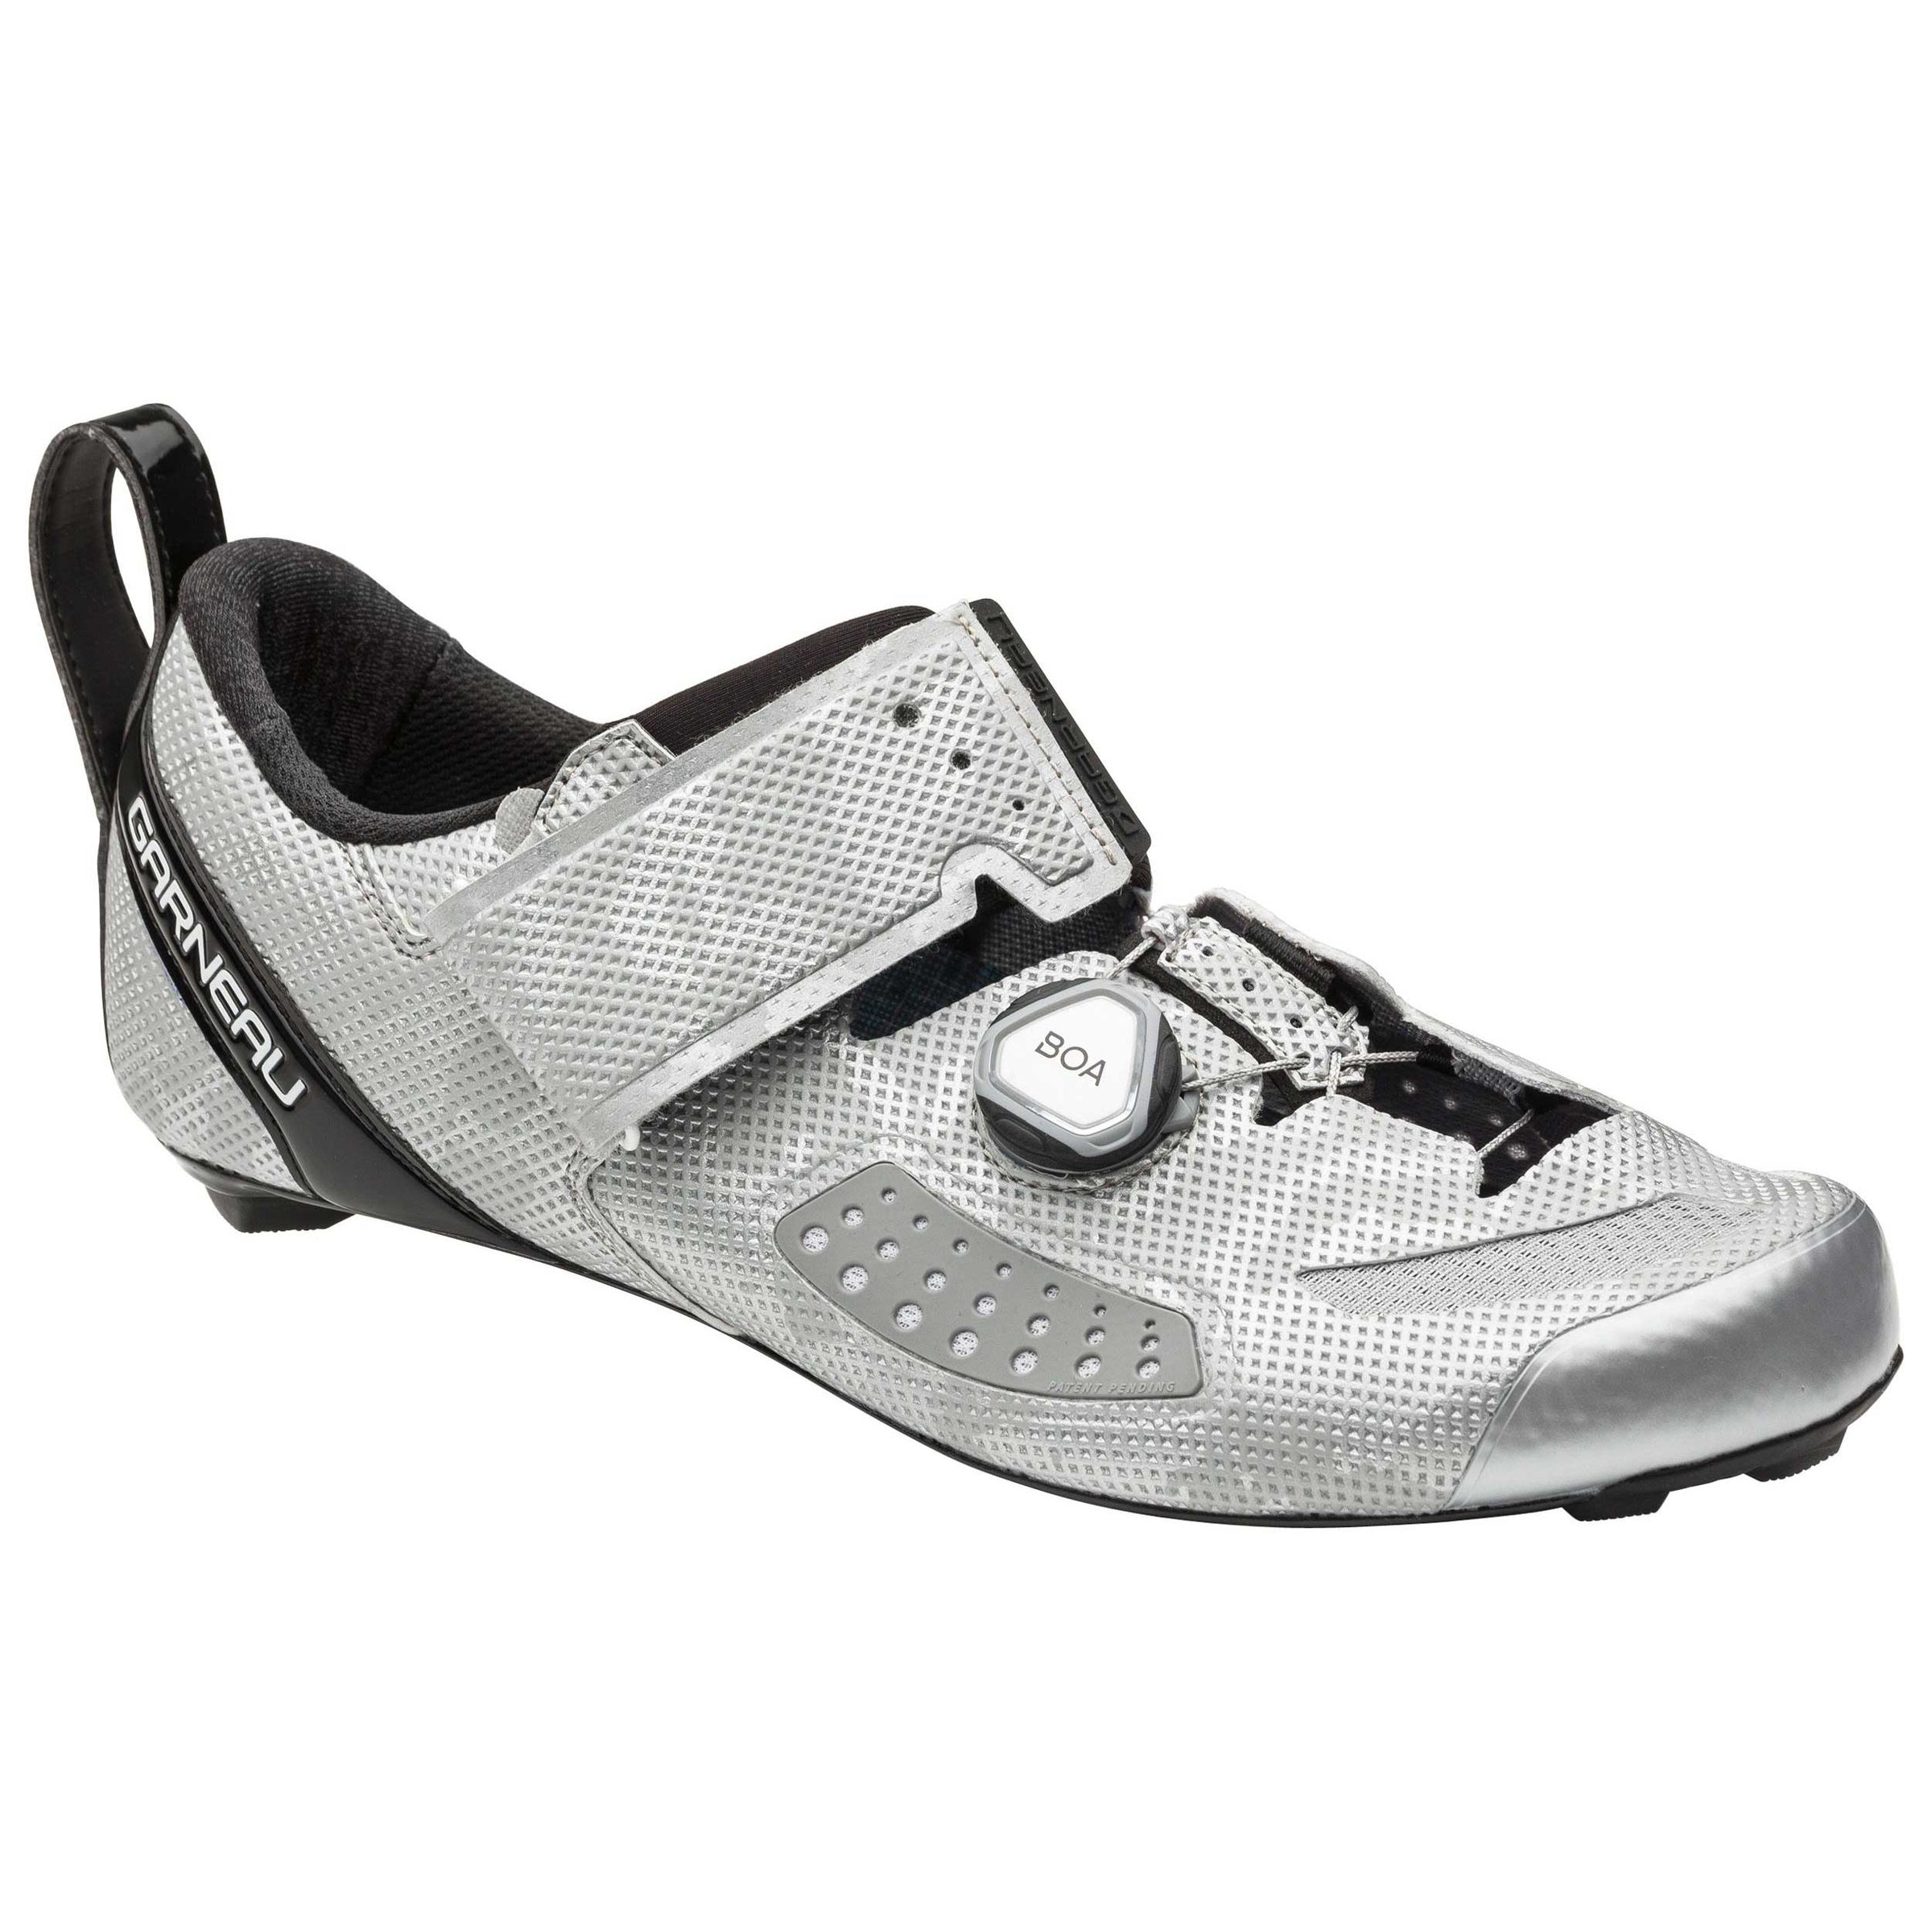  Garneau Tri Air Lite Cycling Shoes - Men's Camo Silver 39